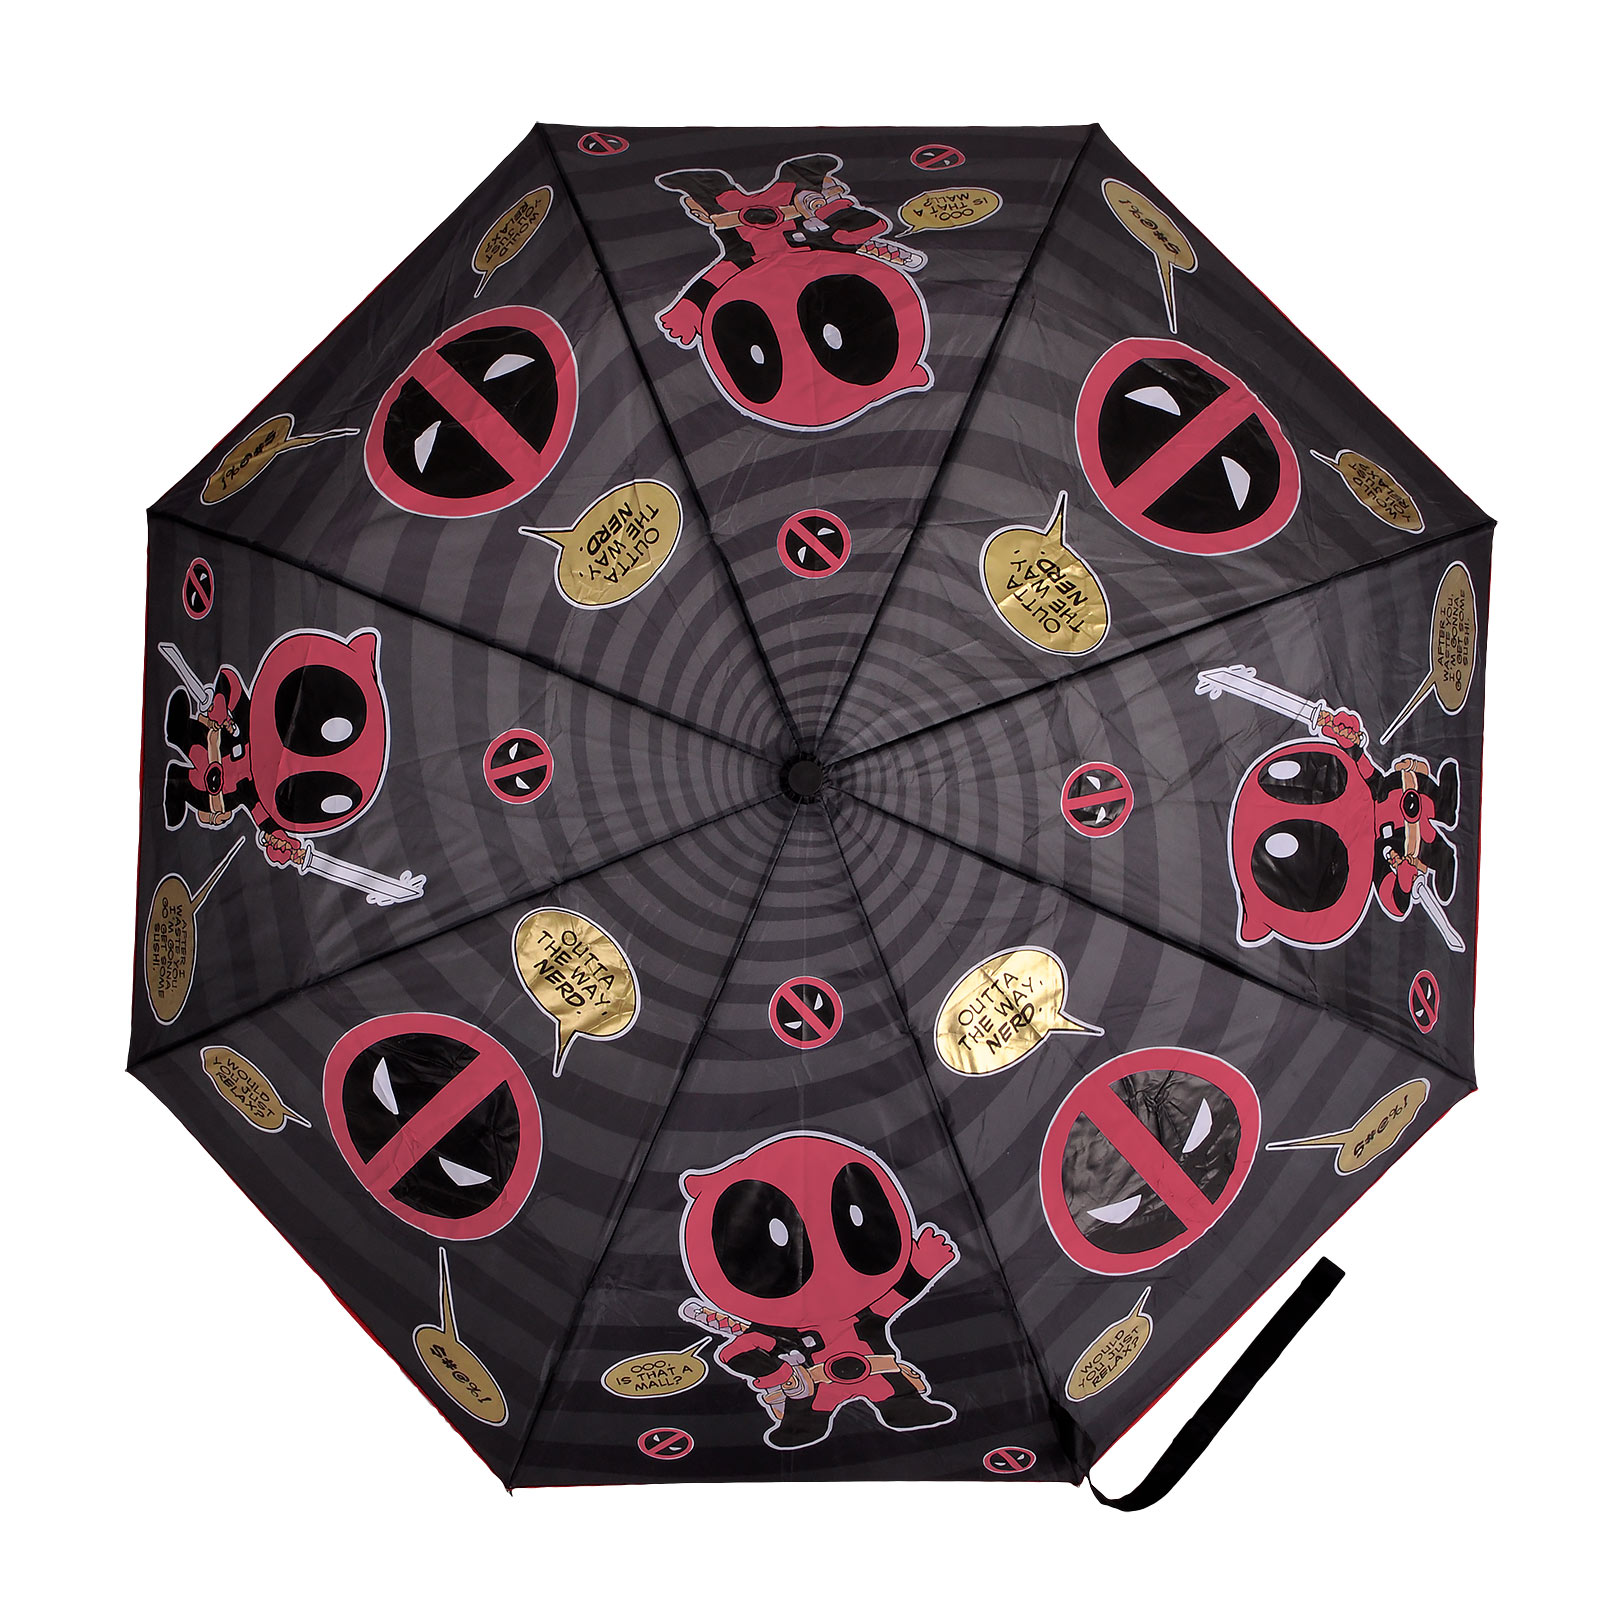 Deadpool - Chibi Paraplu met Aqua Effect